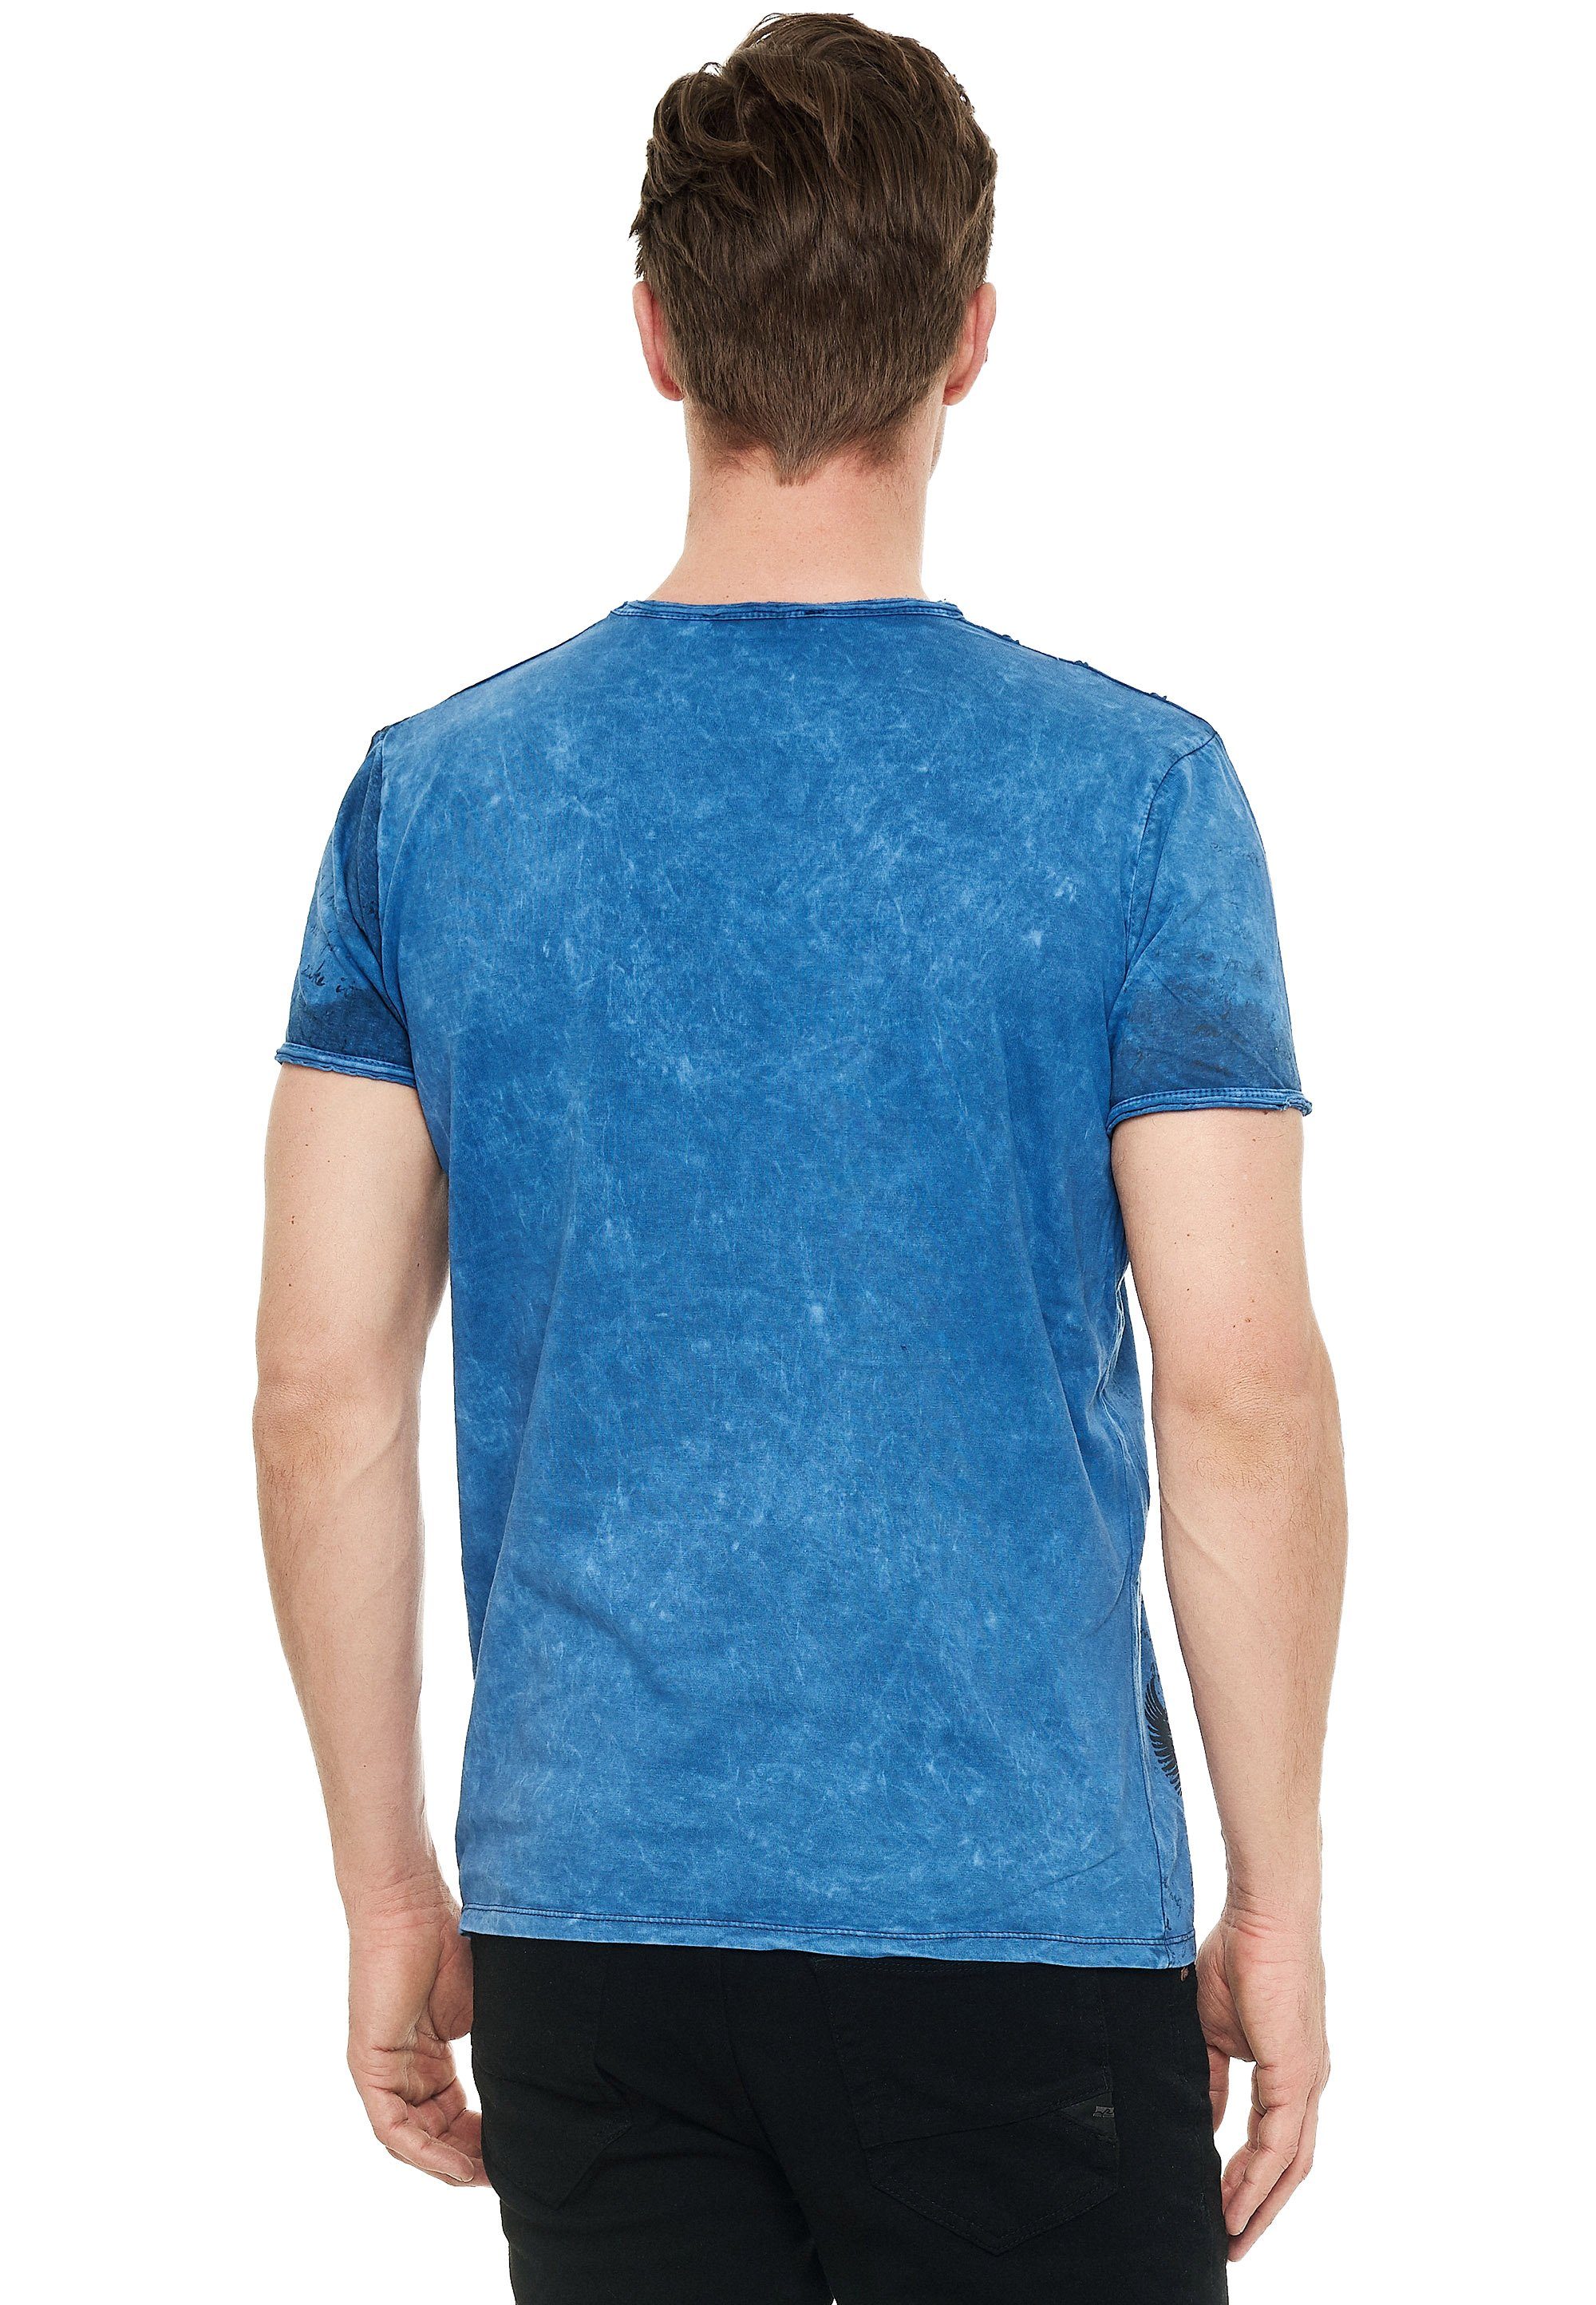 Rusty eindrucksvollem blau Neal Print T-Shirt mit